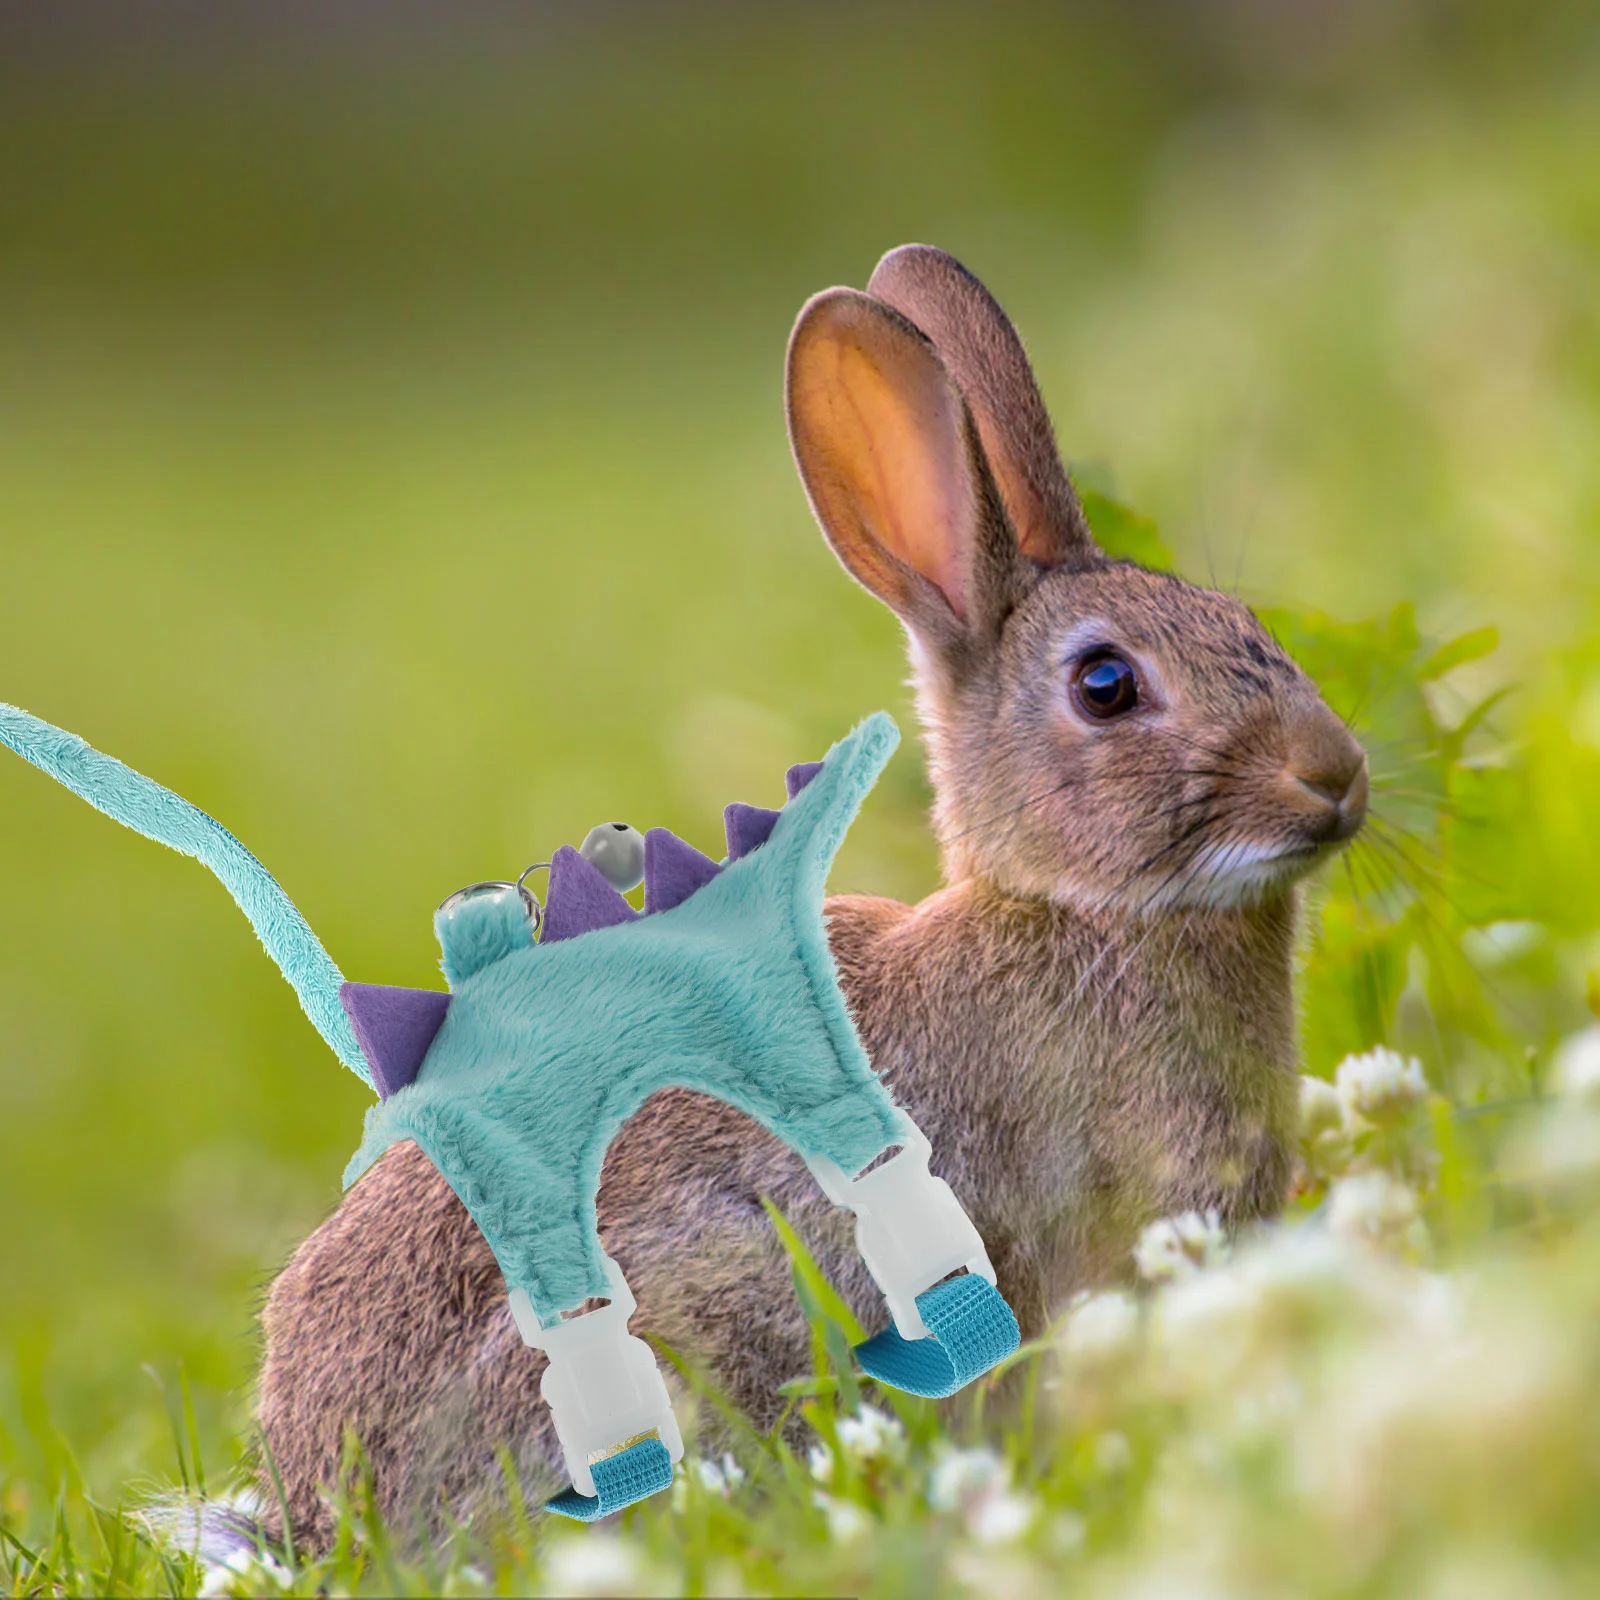 Convenient Outdoor Lightweight Ferret Walking Vest Squirrel Harness Ferret Clothes